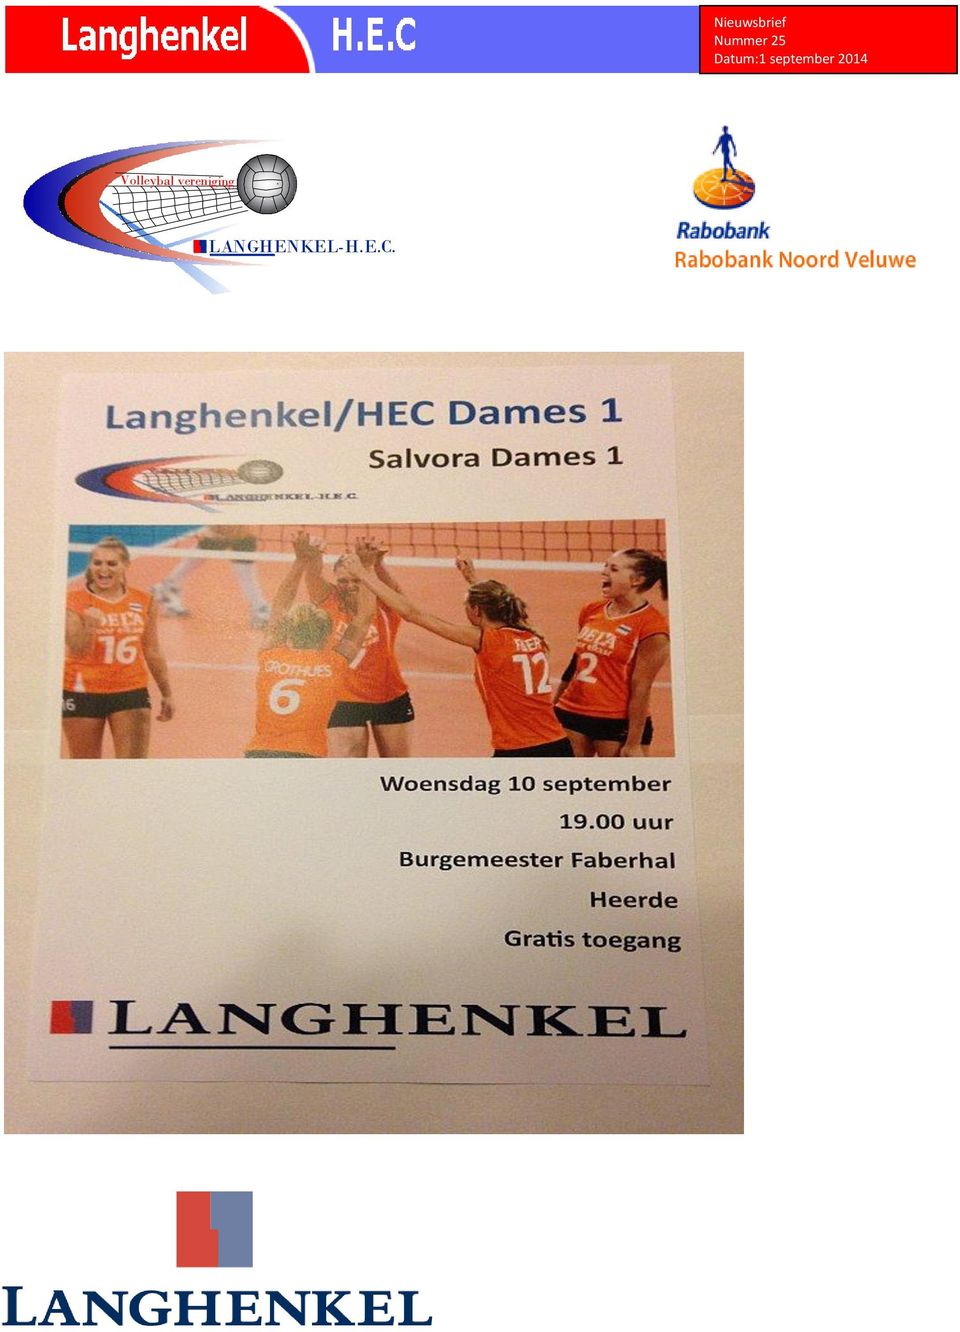 E.C. Volley vereniging LANGHENKEL-H.E.C. Volleybal vereniging LANGHENKEL-H.